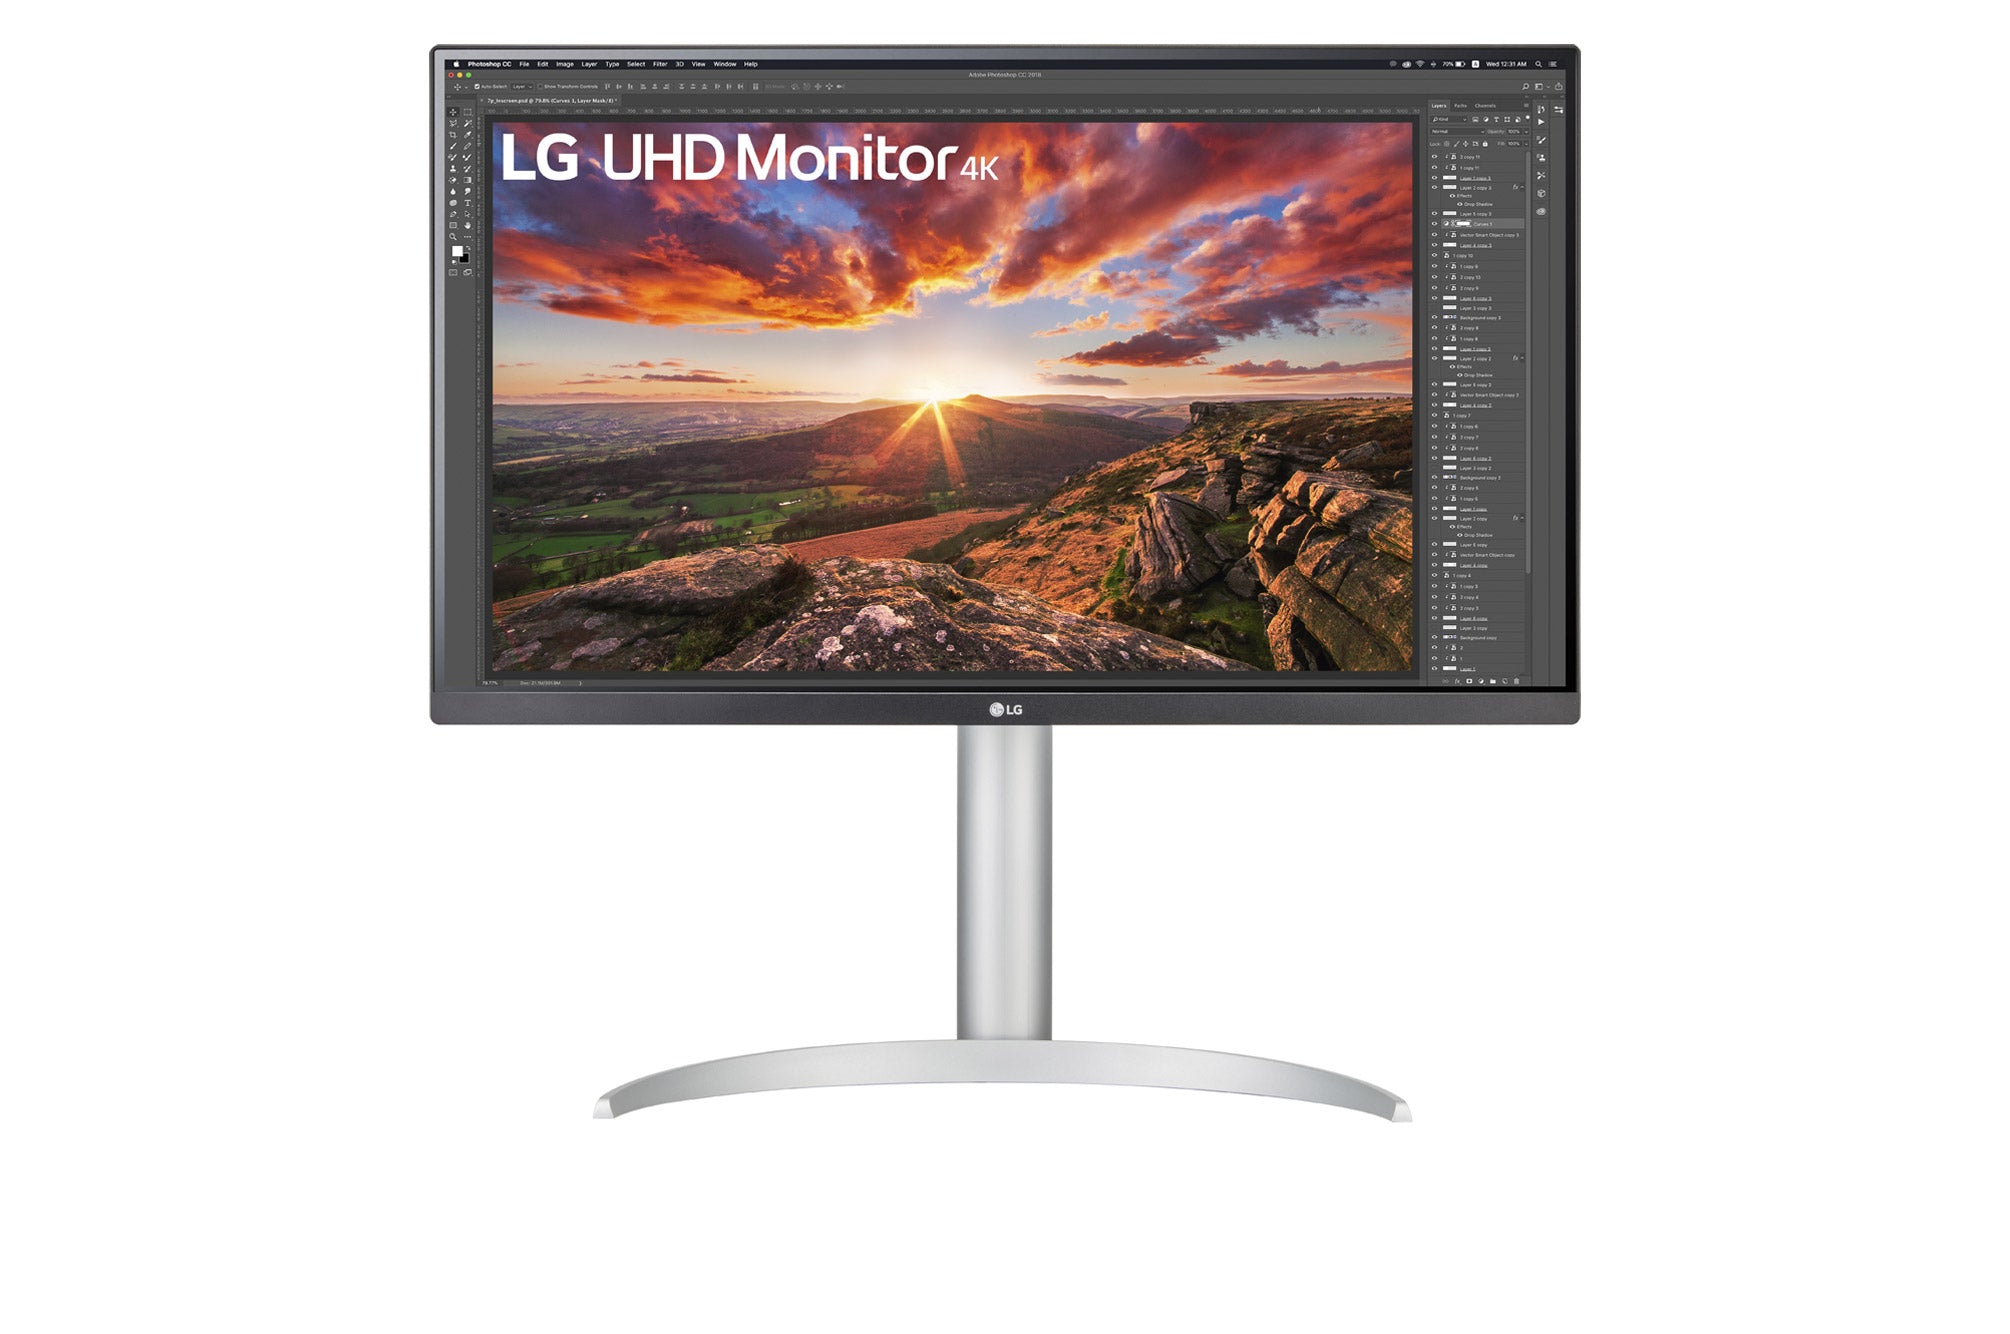 LG 27UP850N UltraHD / 27 inch / 3840 x 2160 Resolution / AMD FreeSync / Dynamic Action Sync / Black Stabilizer